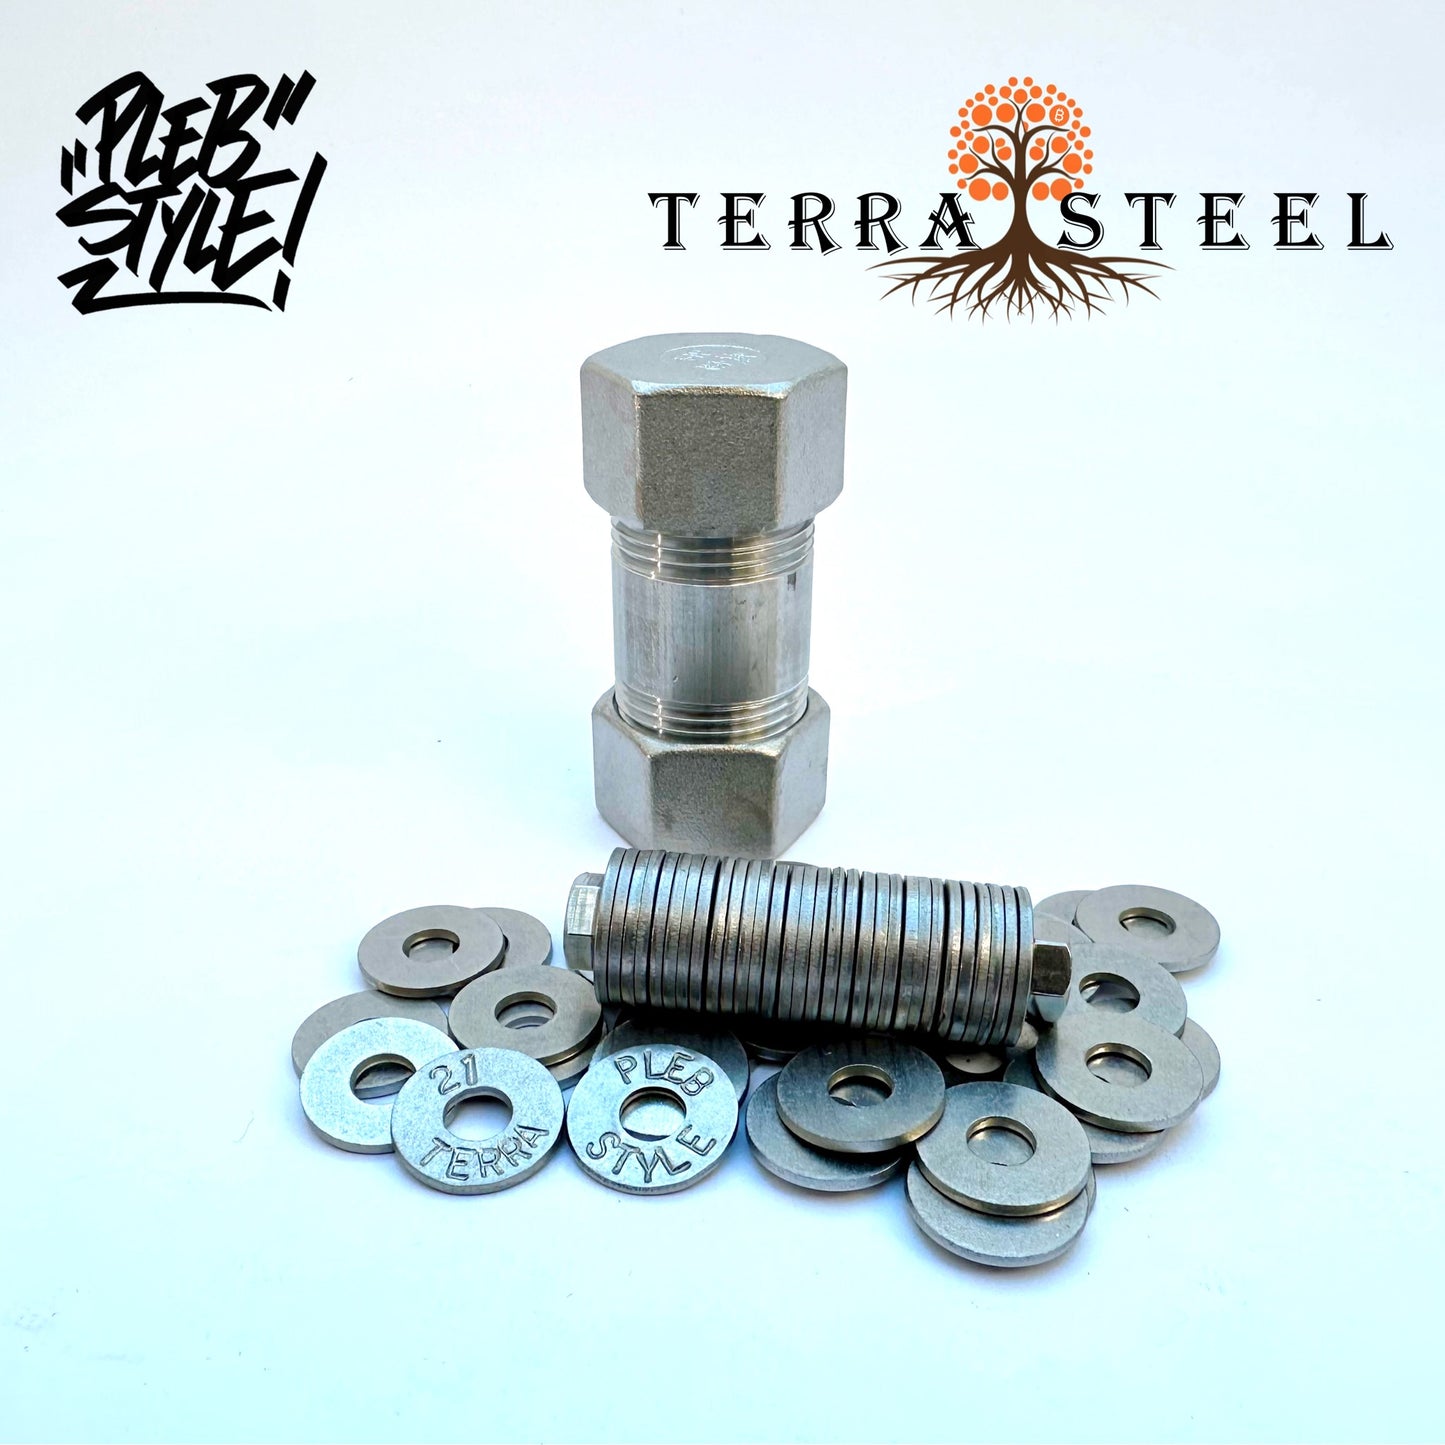 Terra Steel Wallet by Plebstyle